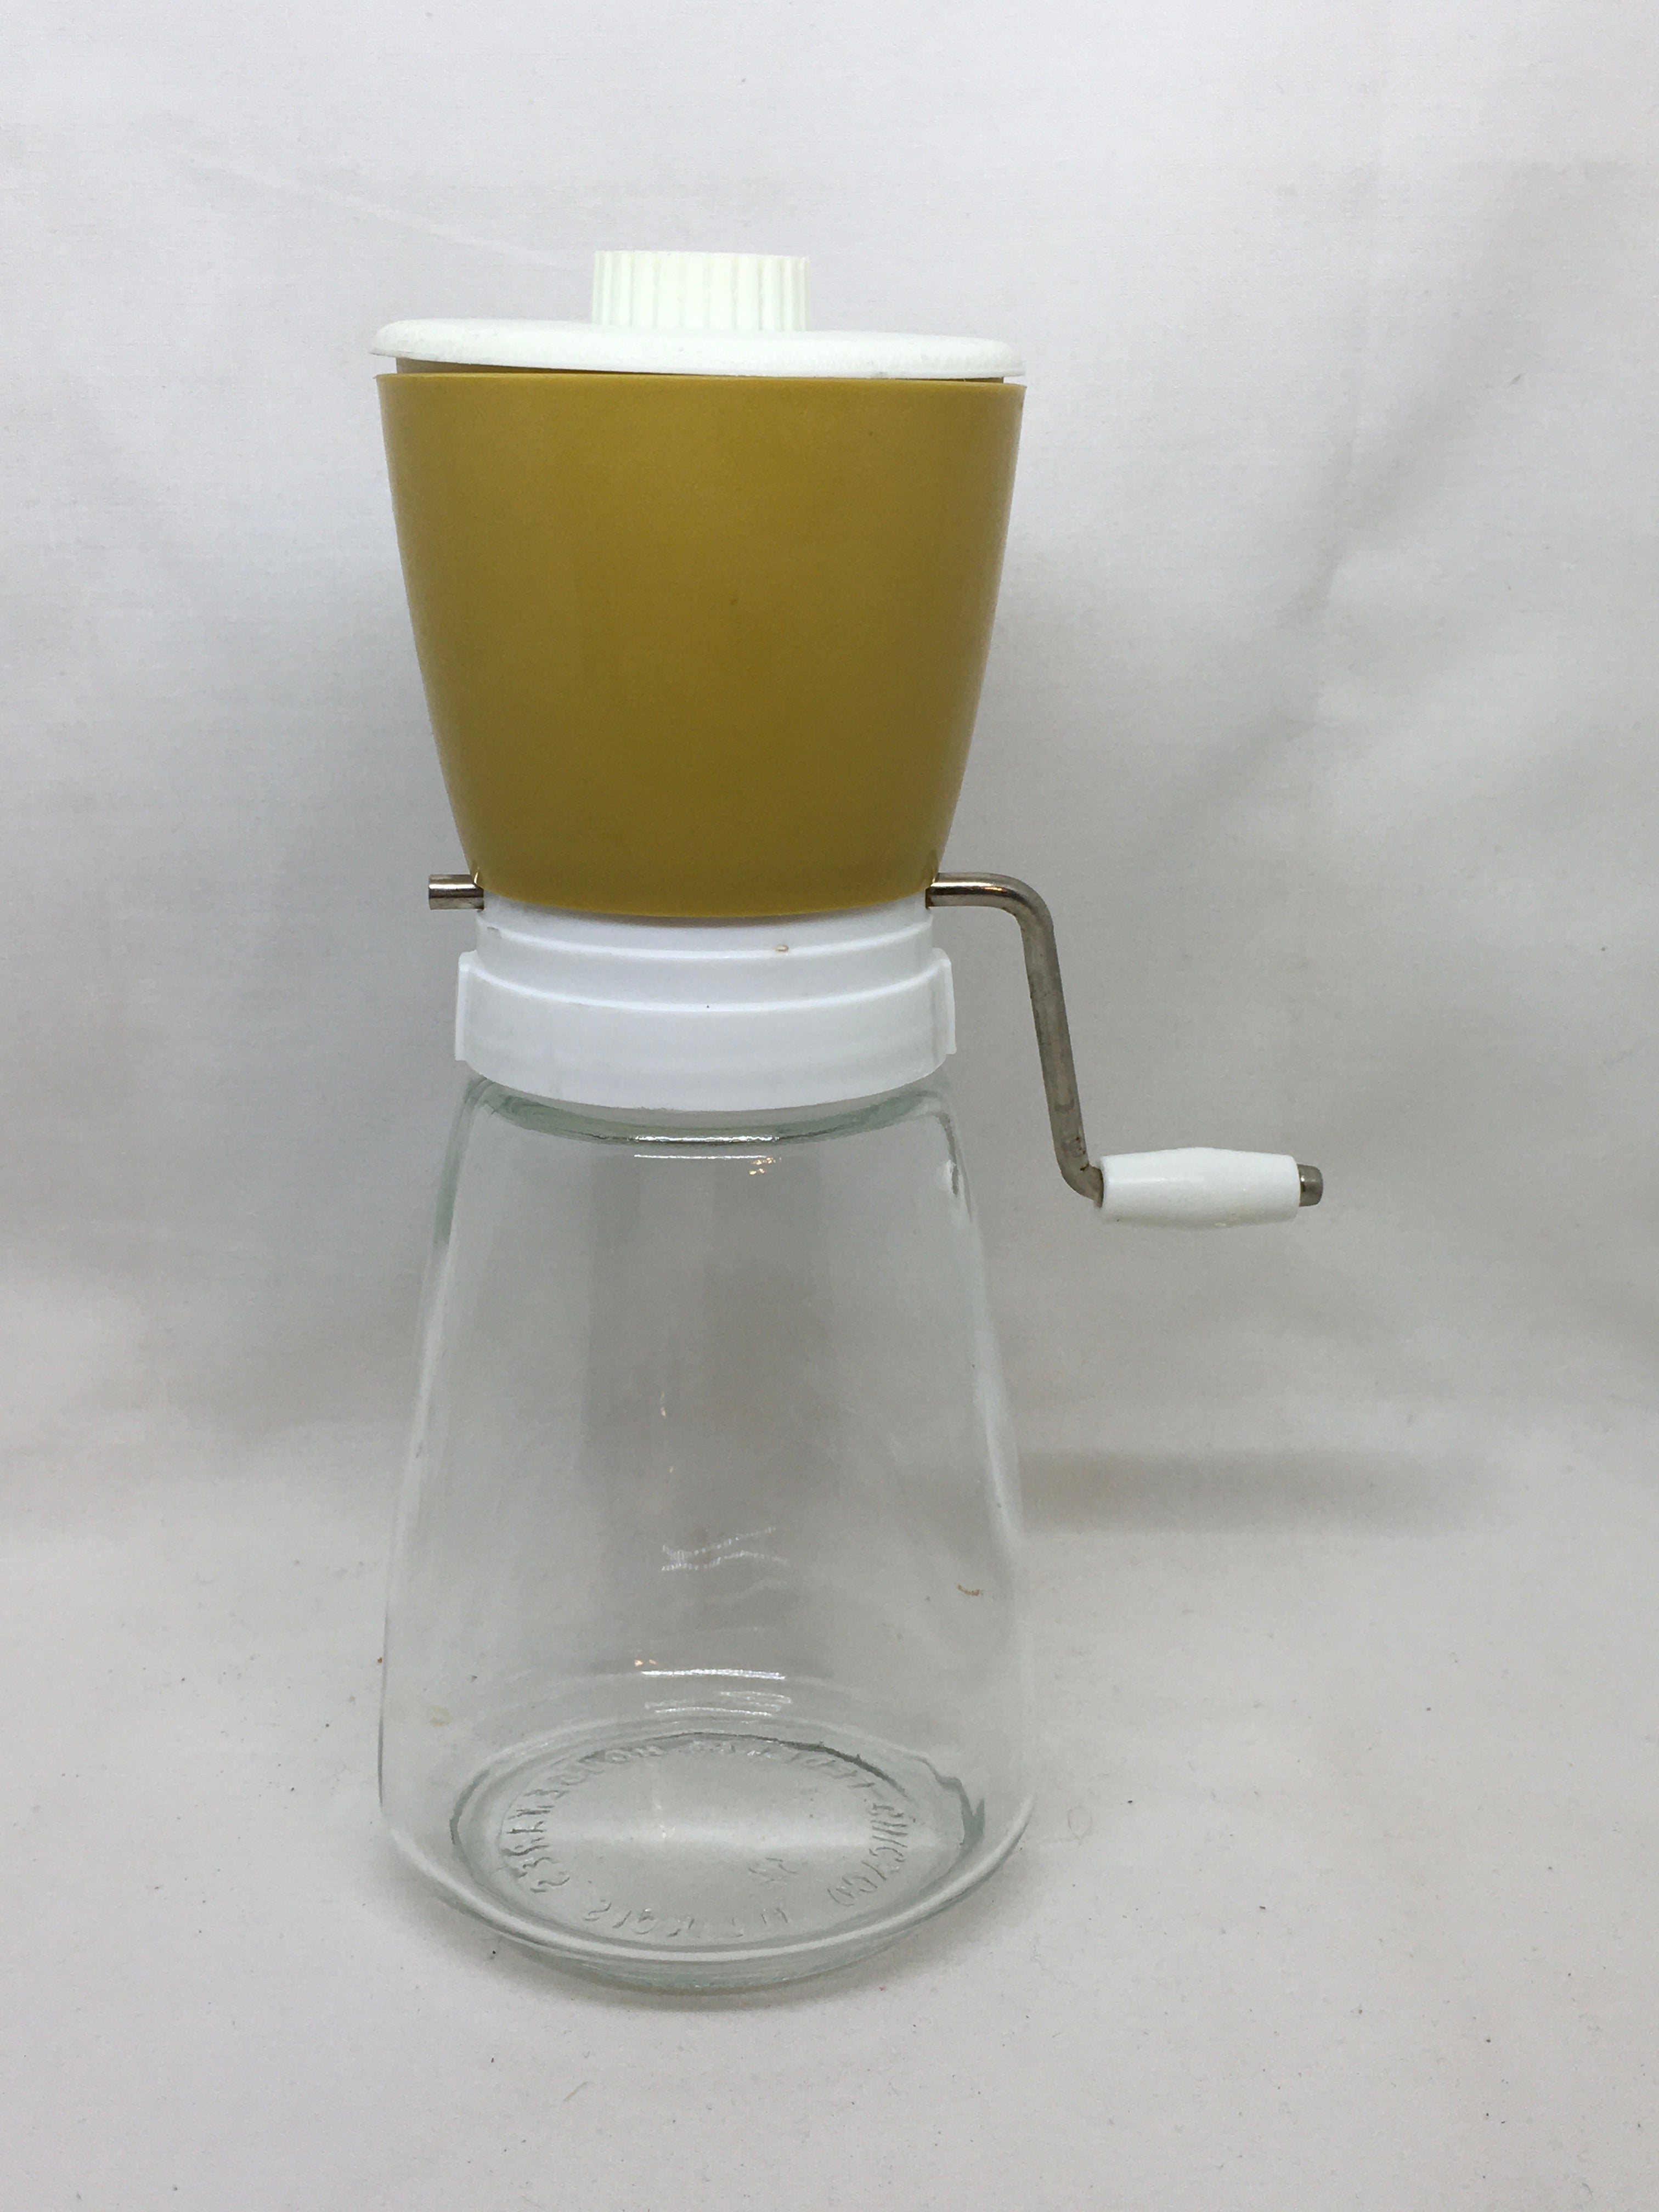 Vintage Nut Grinder With Plastic Measuring Cup Lid, Kitchen